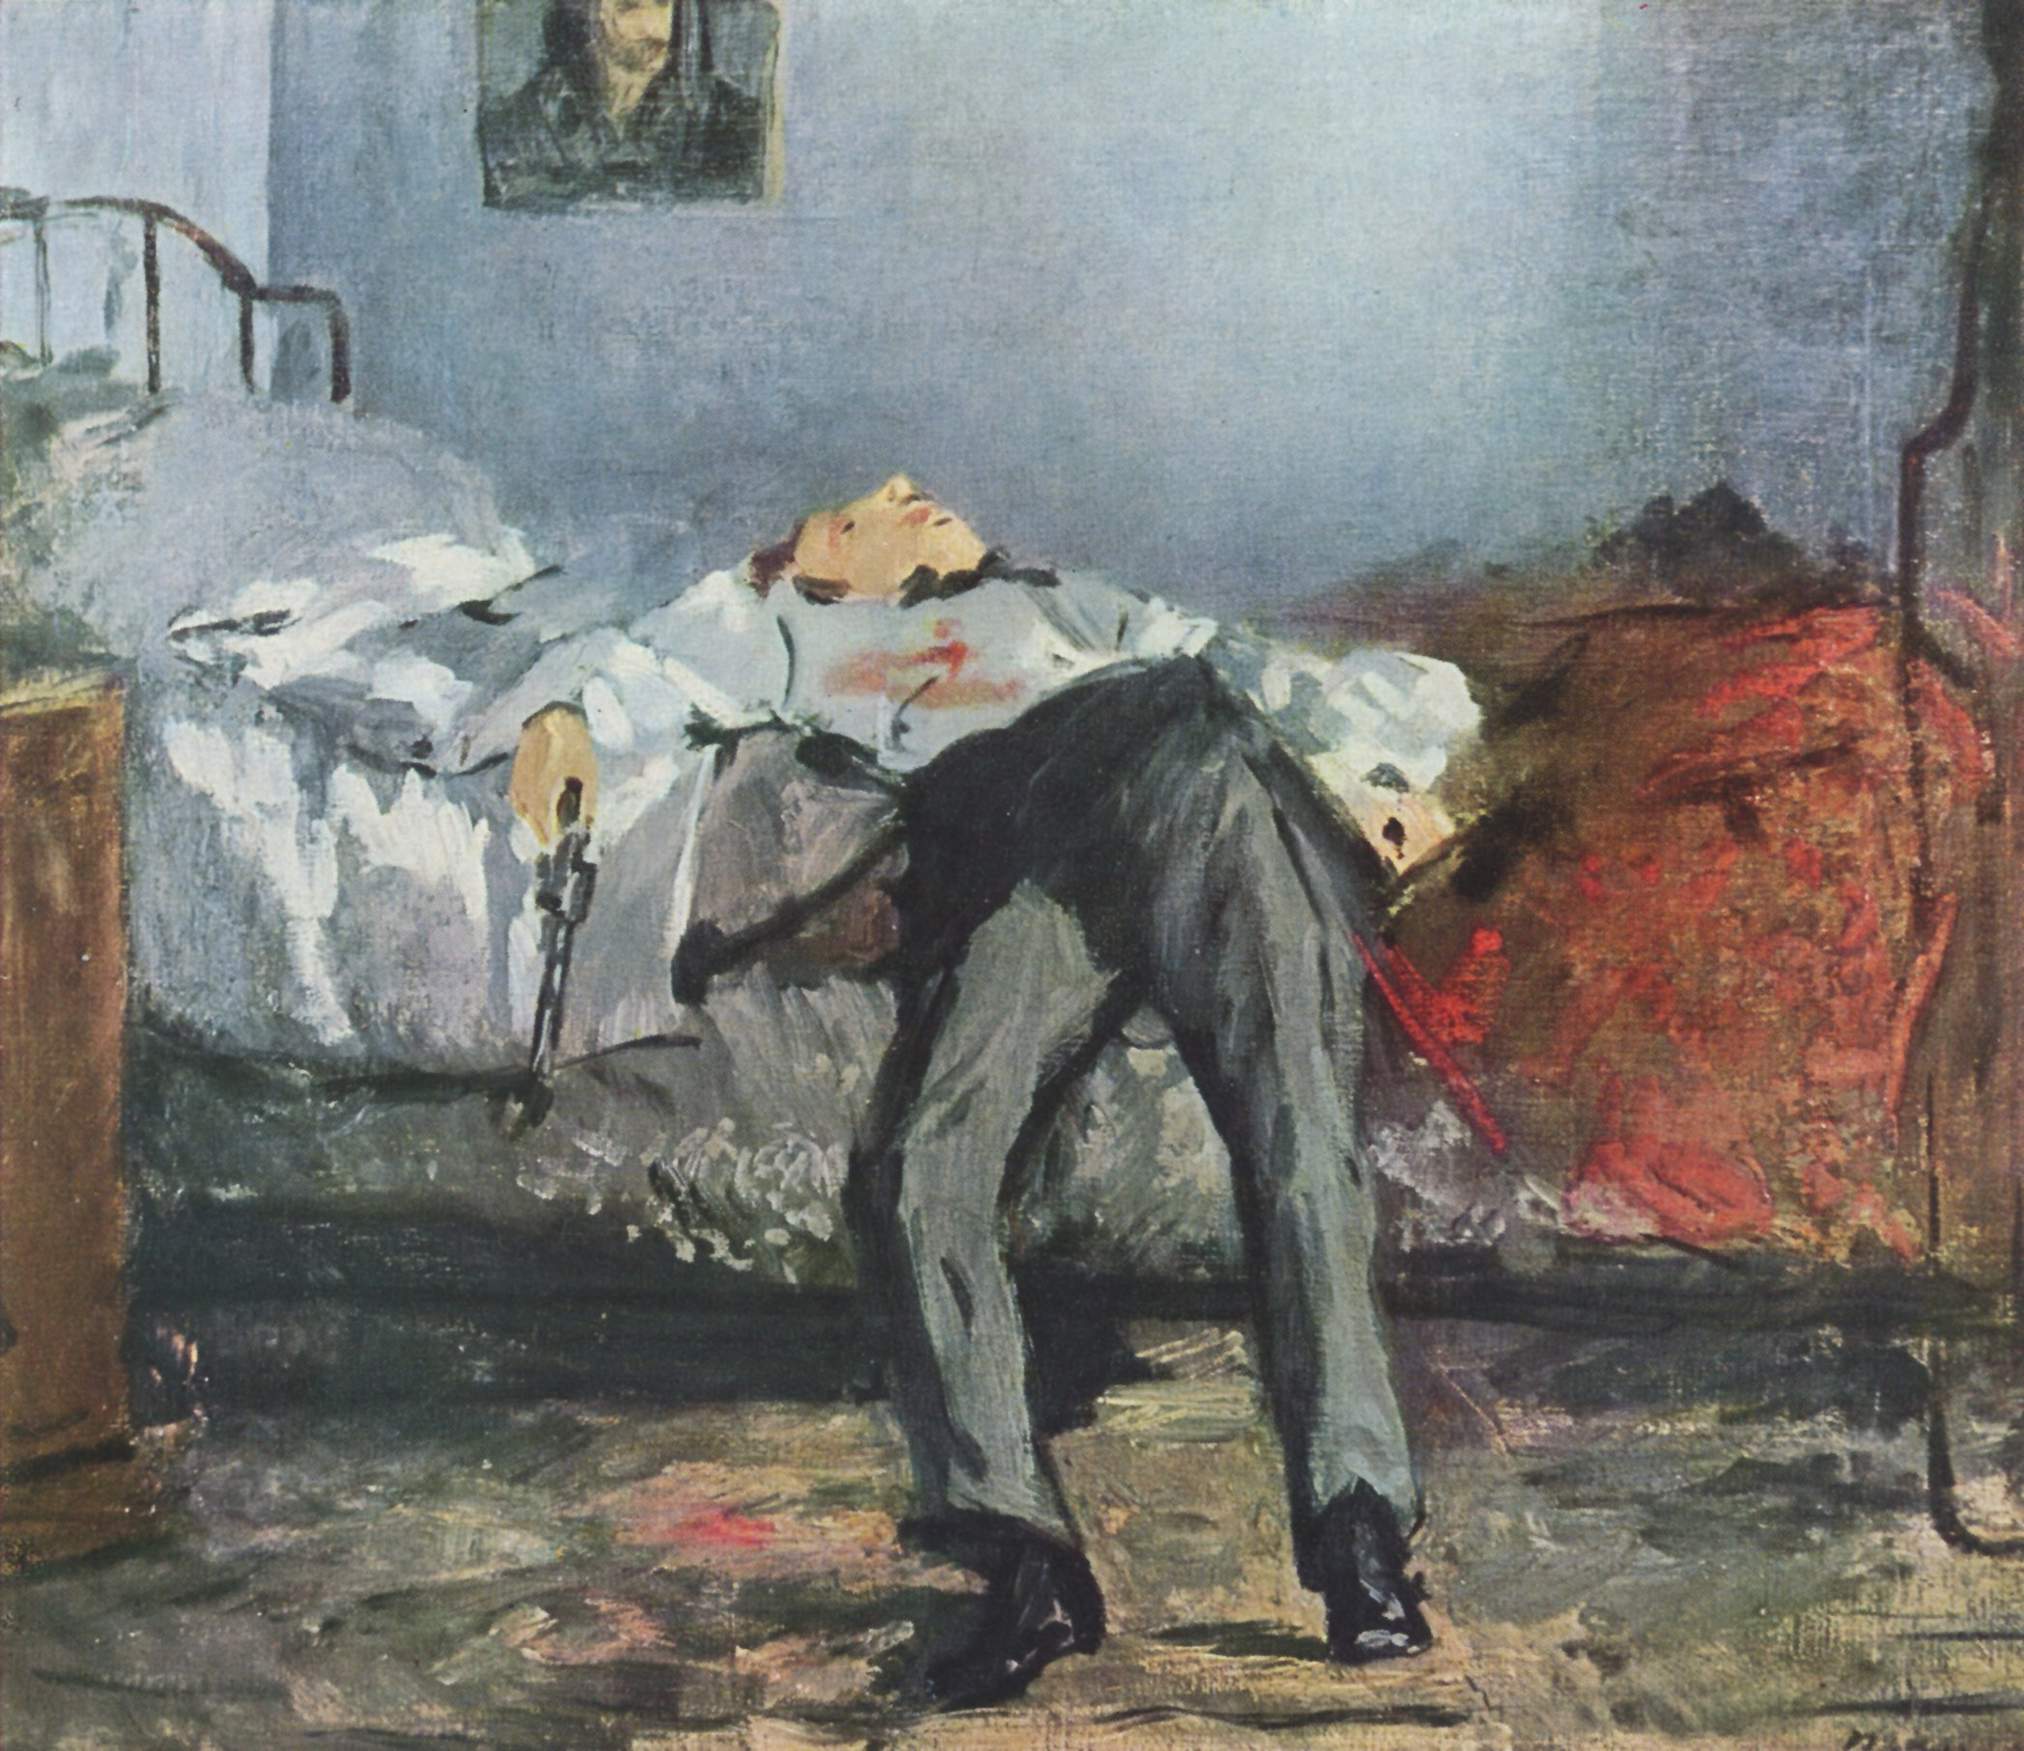 Le Suicidé (Der Suizid) by Édouard Manet - 1877–1881 - 38 cm × 46 cm Sammlung E.G. Bührle